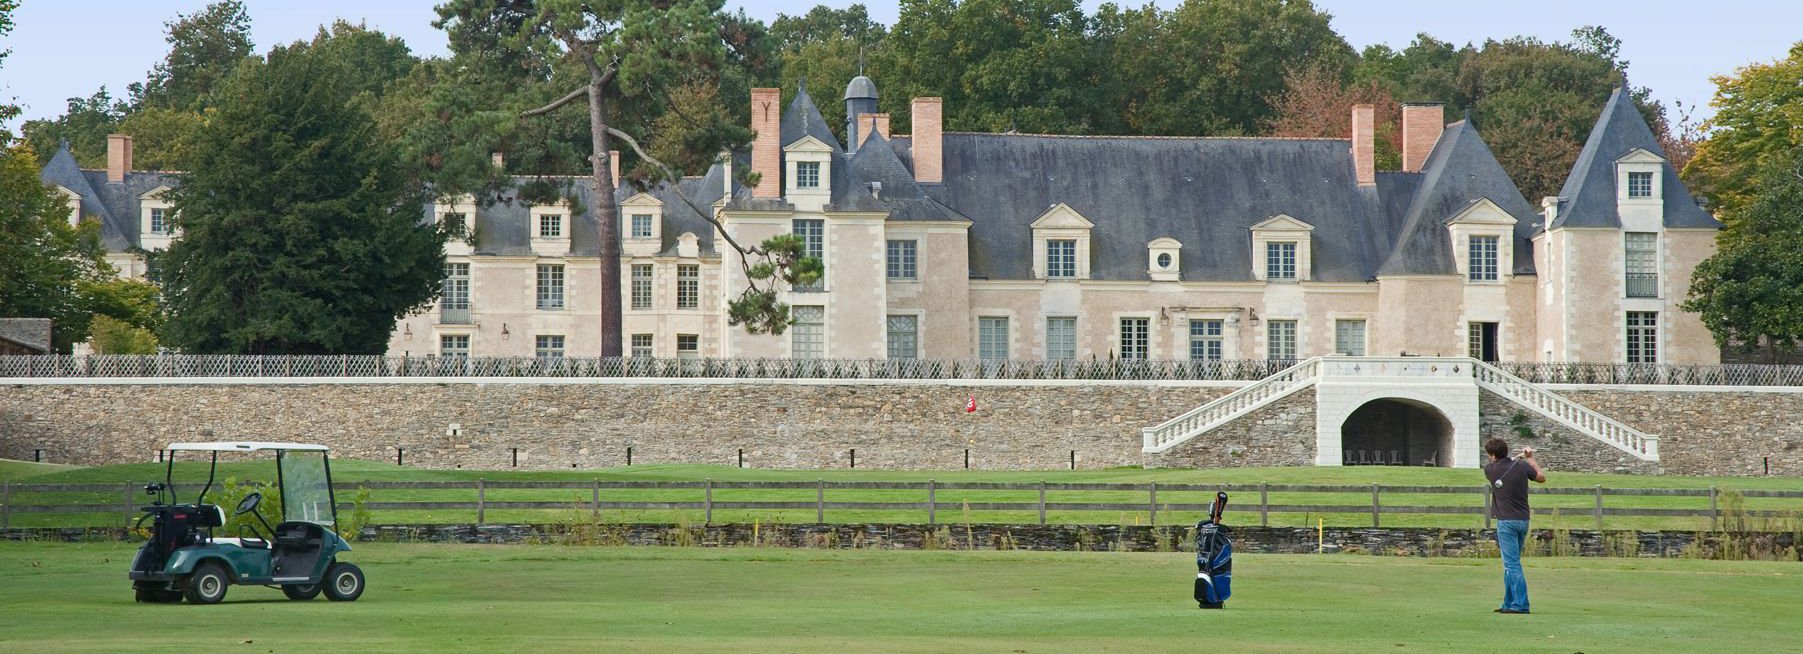 Château avec terrain de golf près d’Angers